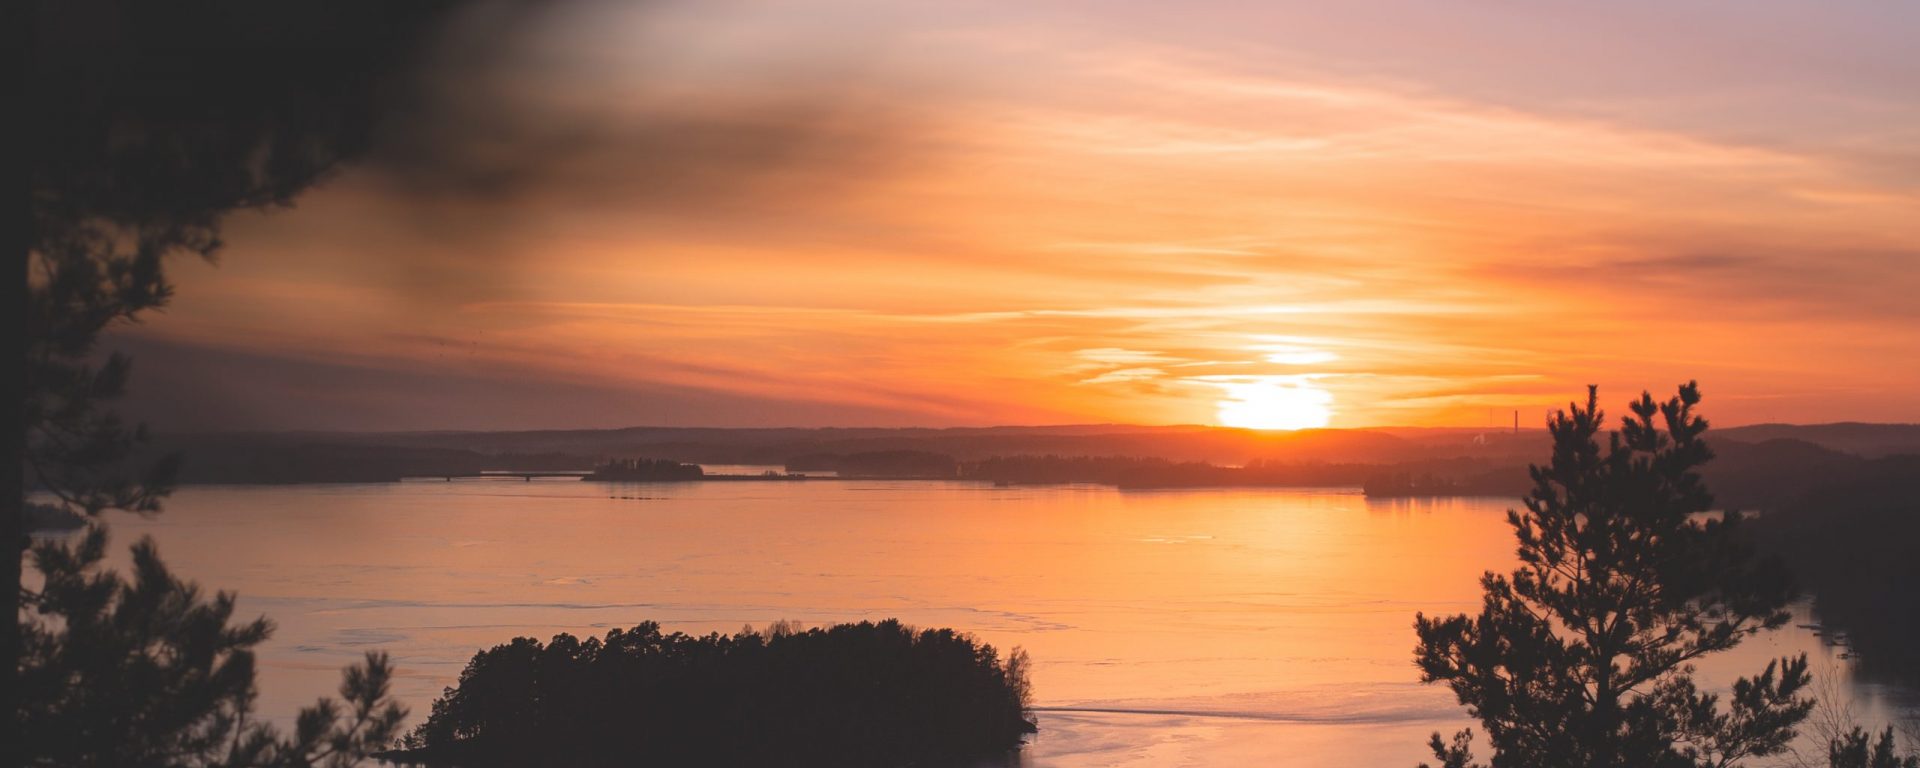 Pispalasta katsottuna auringonlasku Näsijärven yllä